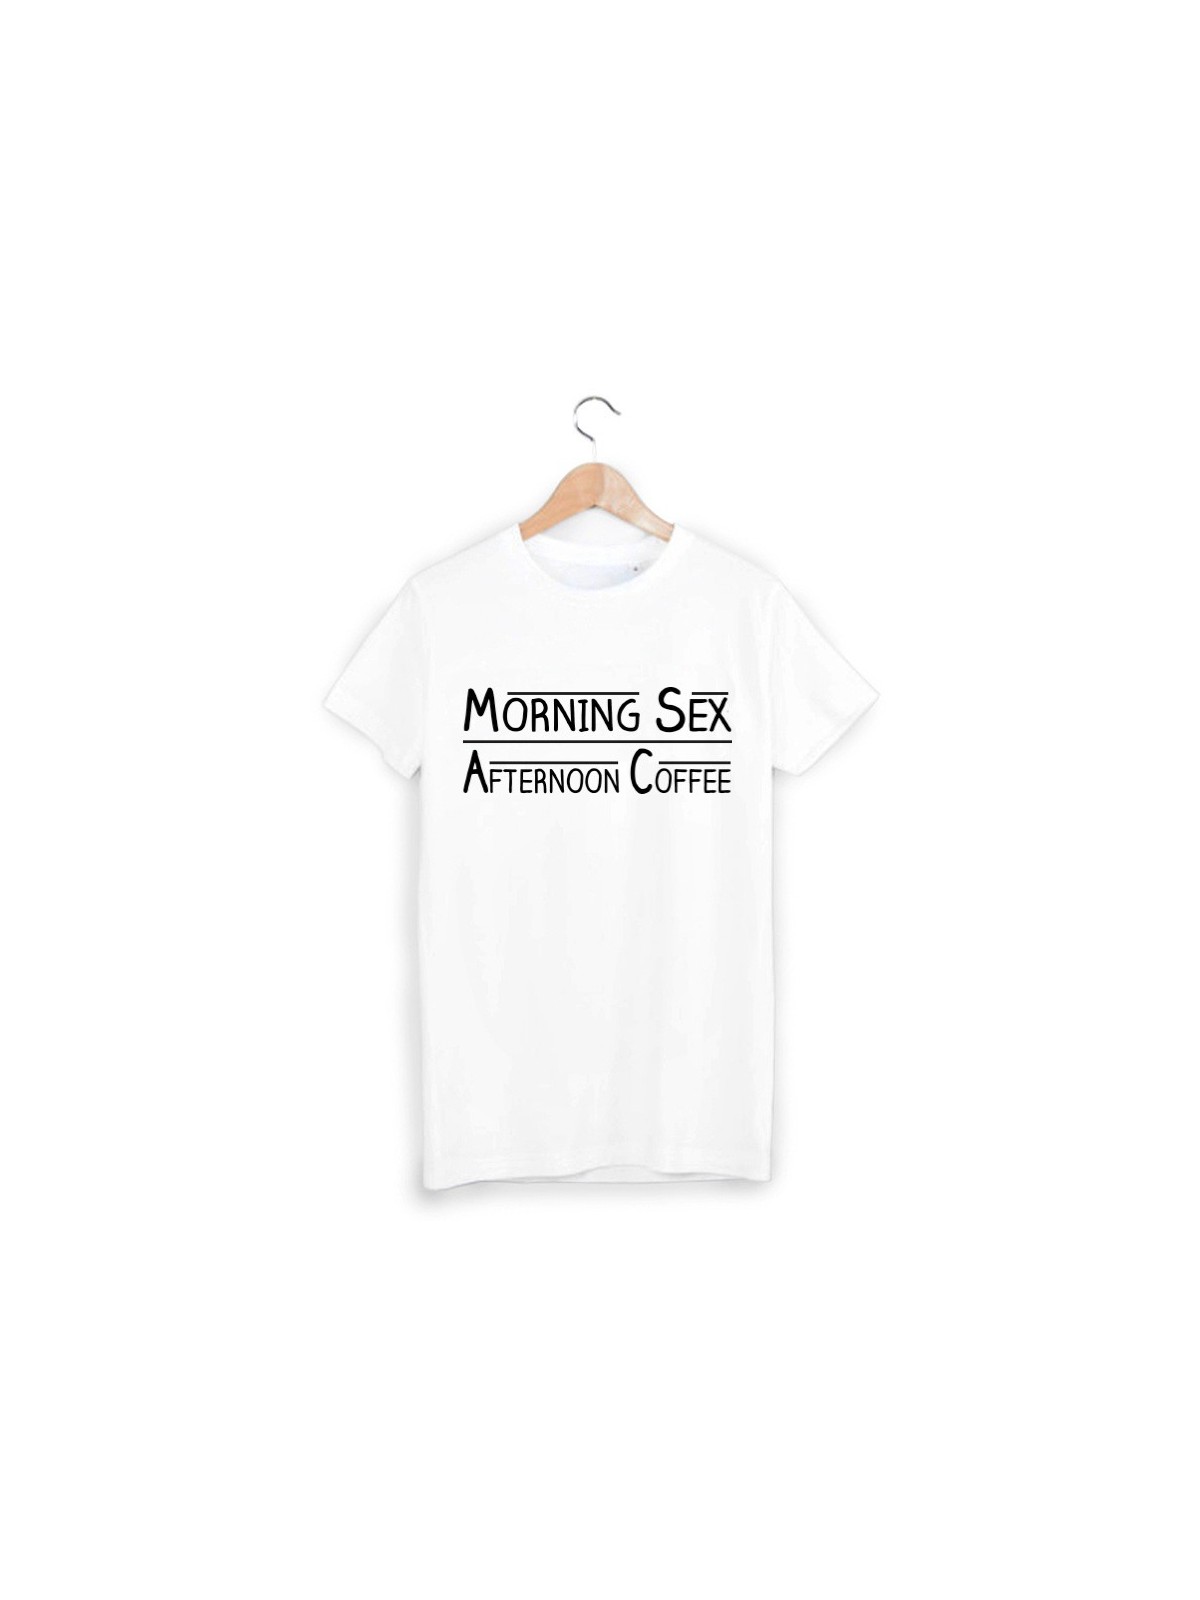 T-Shirt morning sex ref 1330